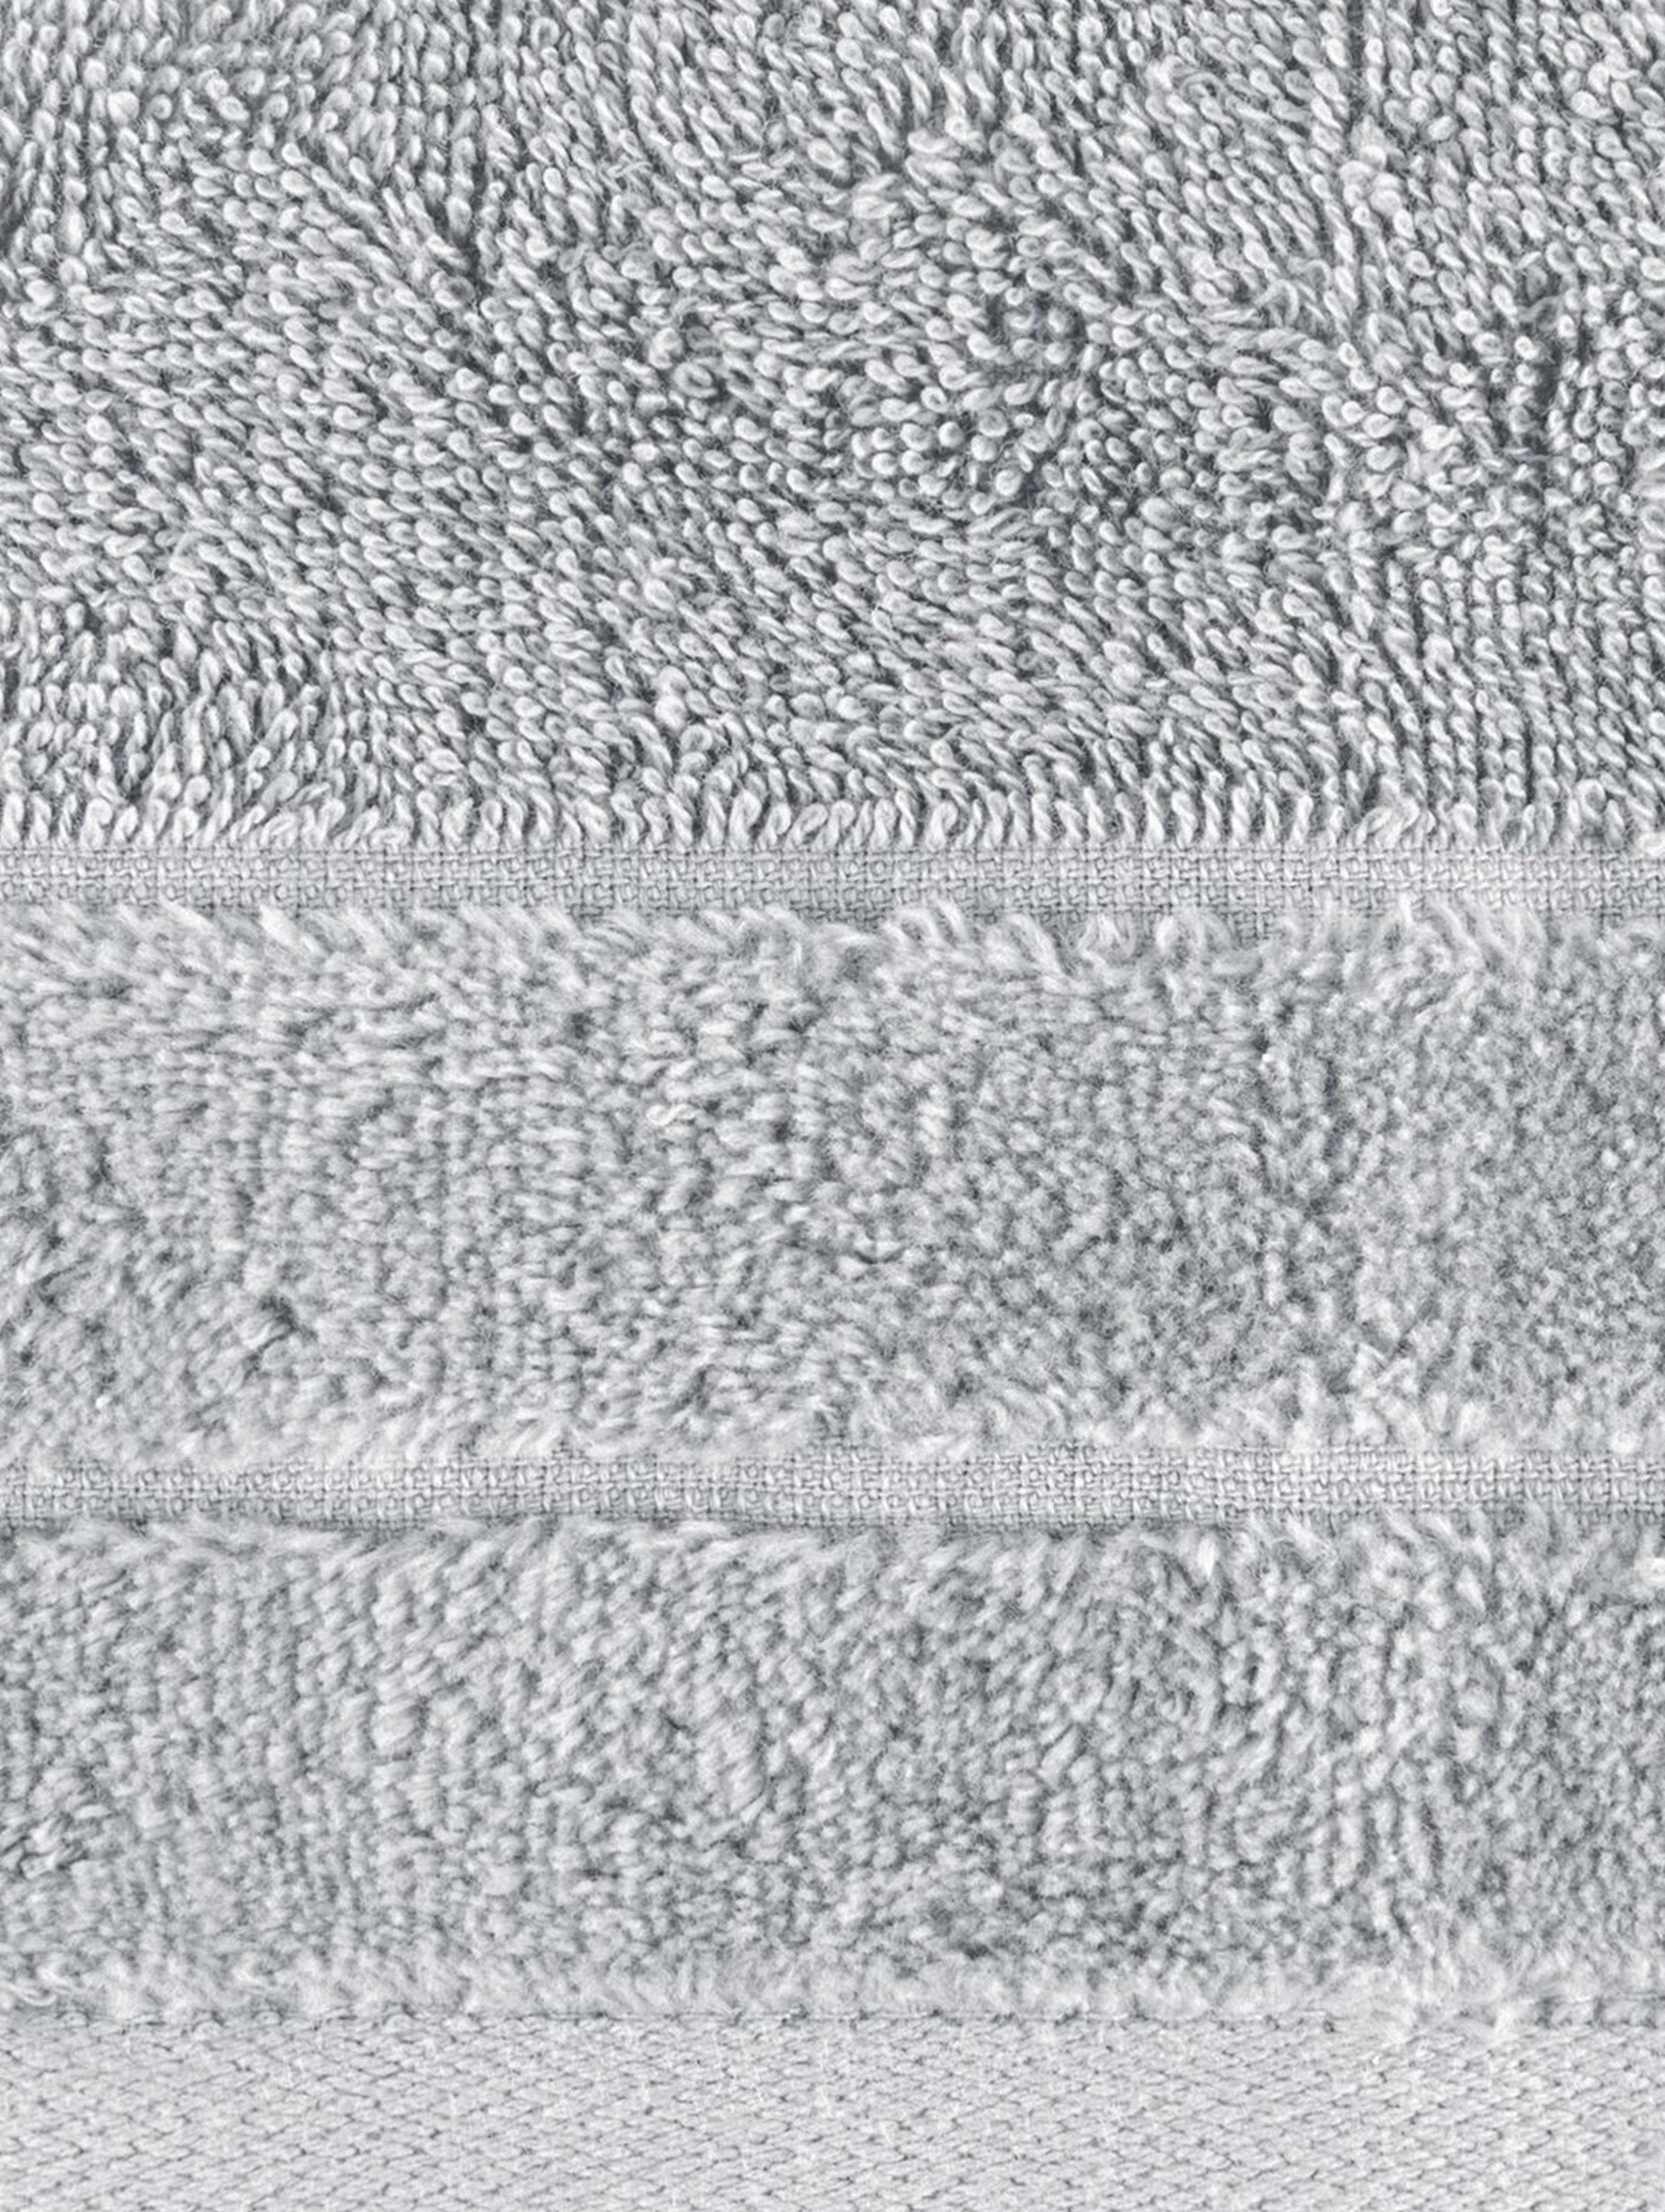 Ręcznik Damla 50x90 cm - jasnoszary